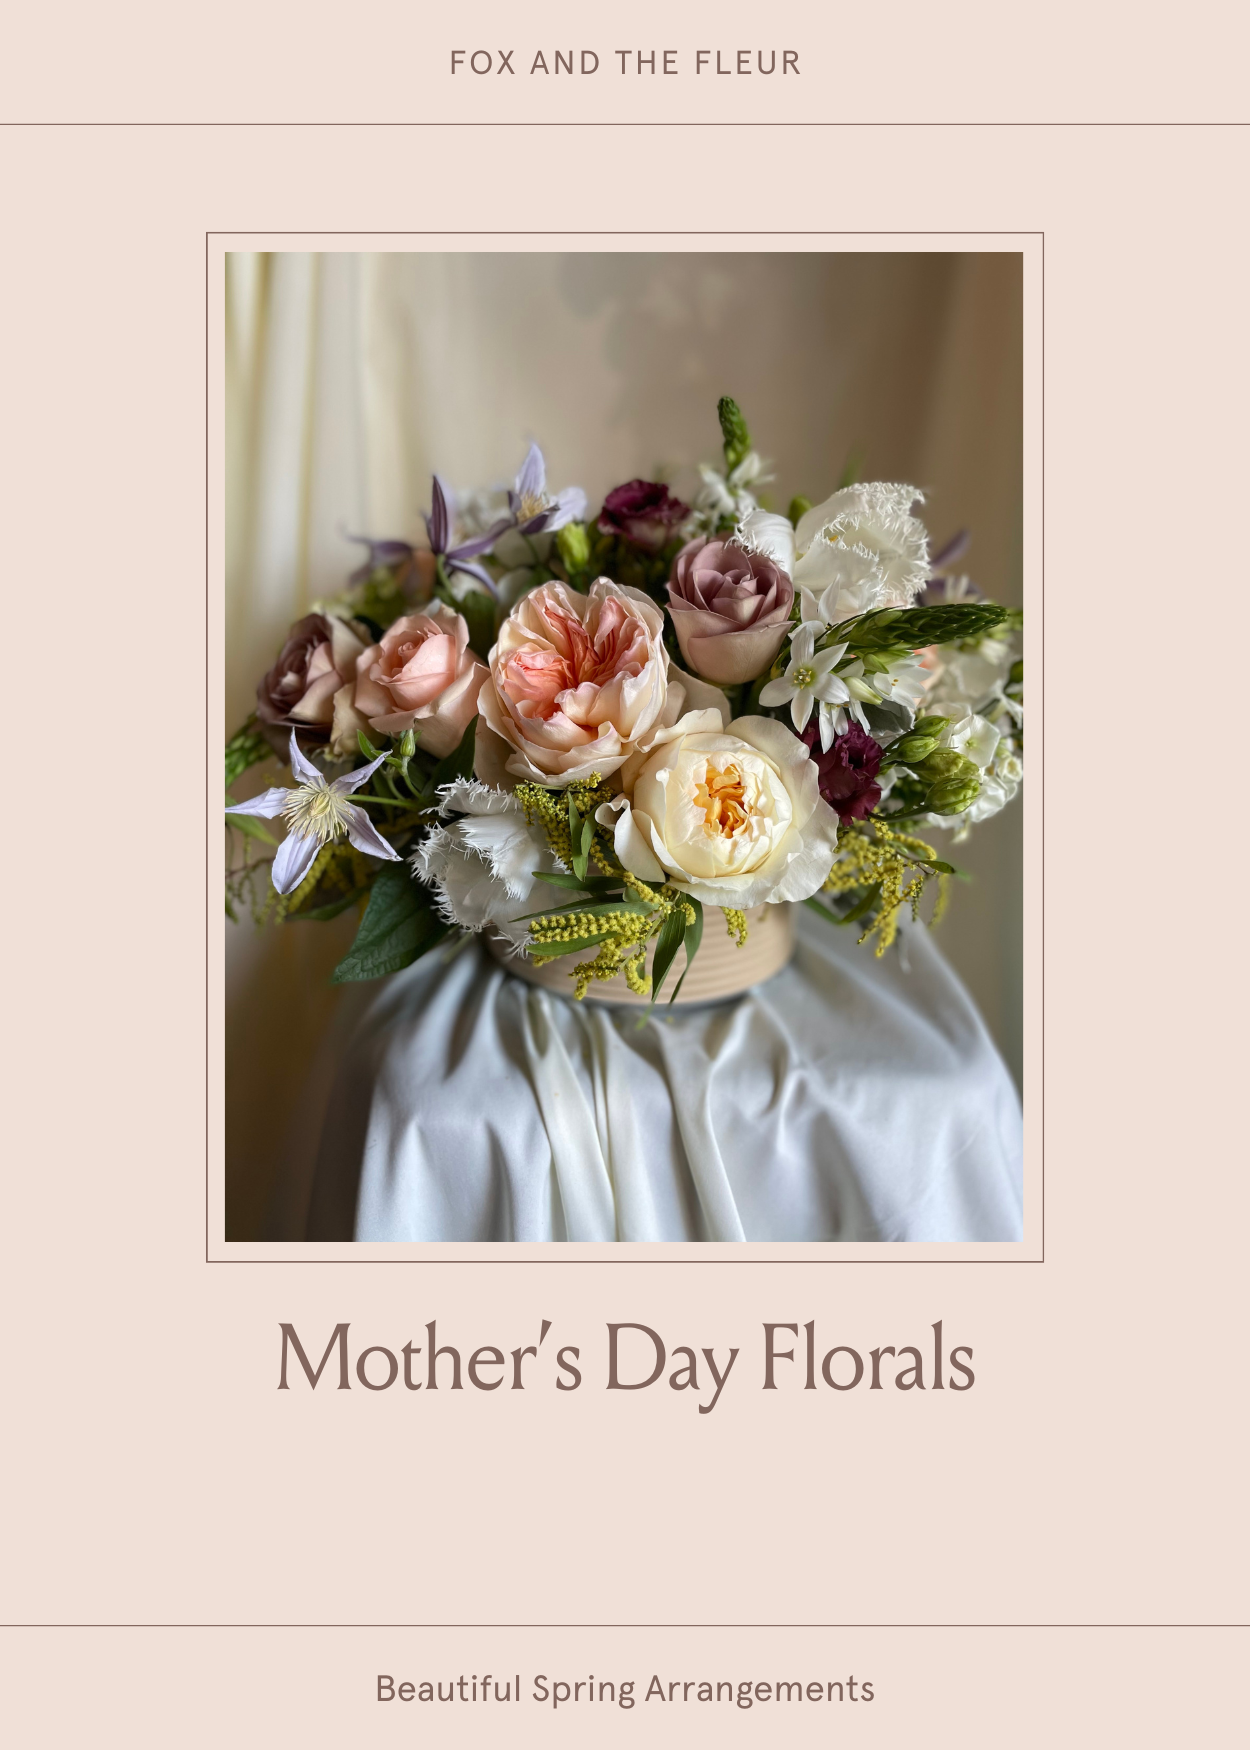 Mother’s Day Florals Workshop